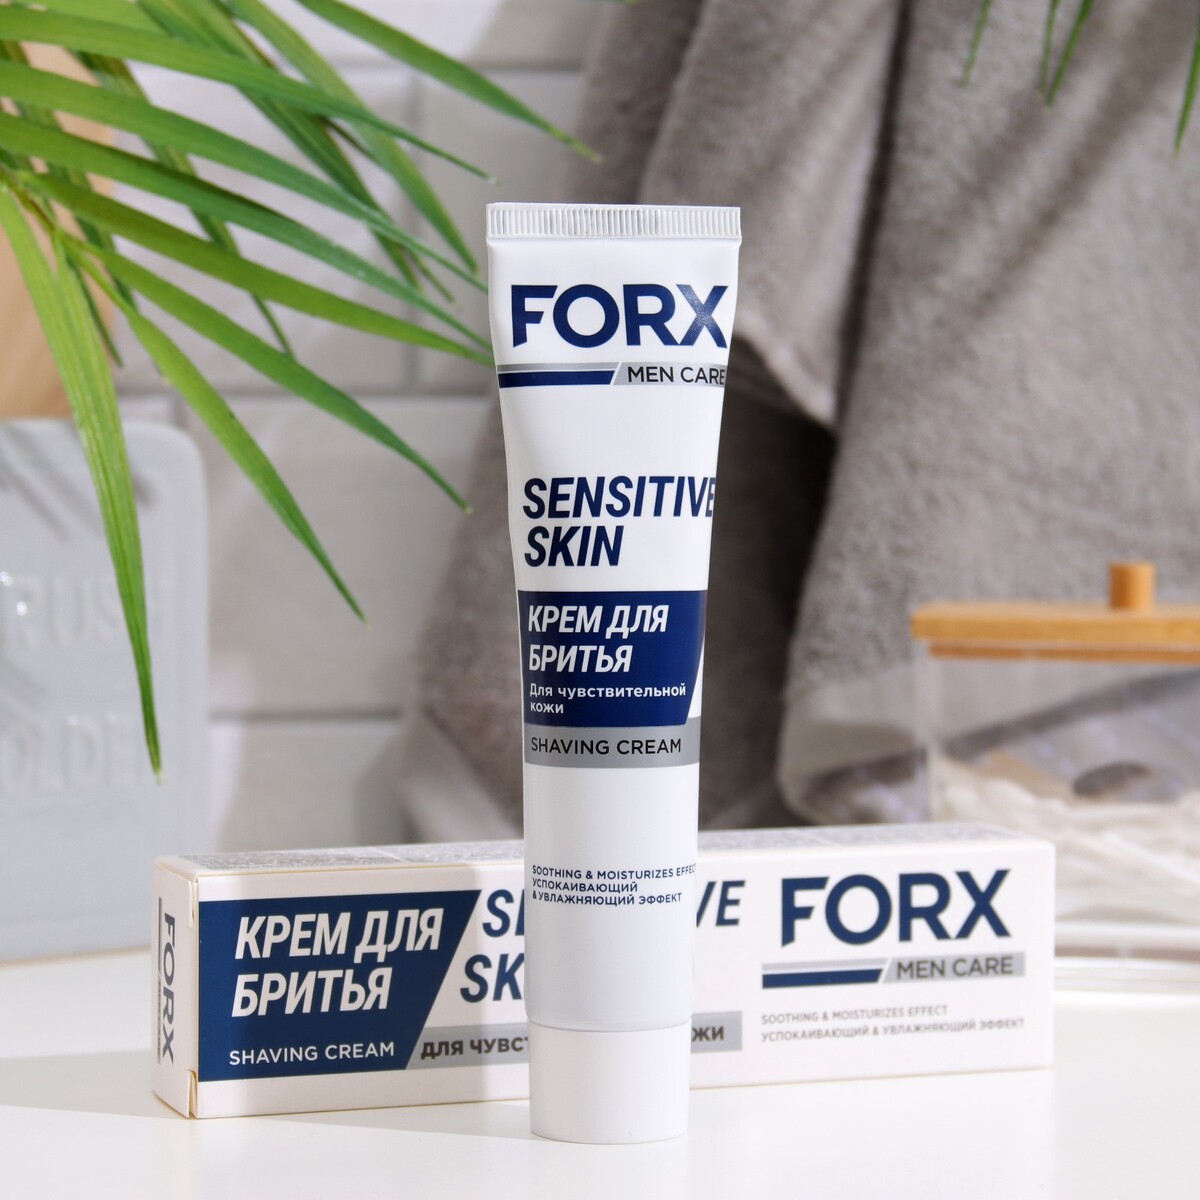 Крем для бритья forx men care sensitive skin для чувствительной кожи, 50 мл крем для рук ave skin питательный 100 г